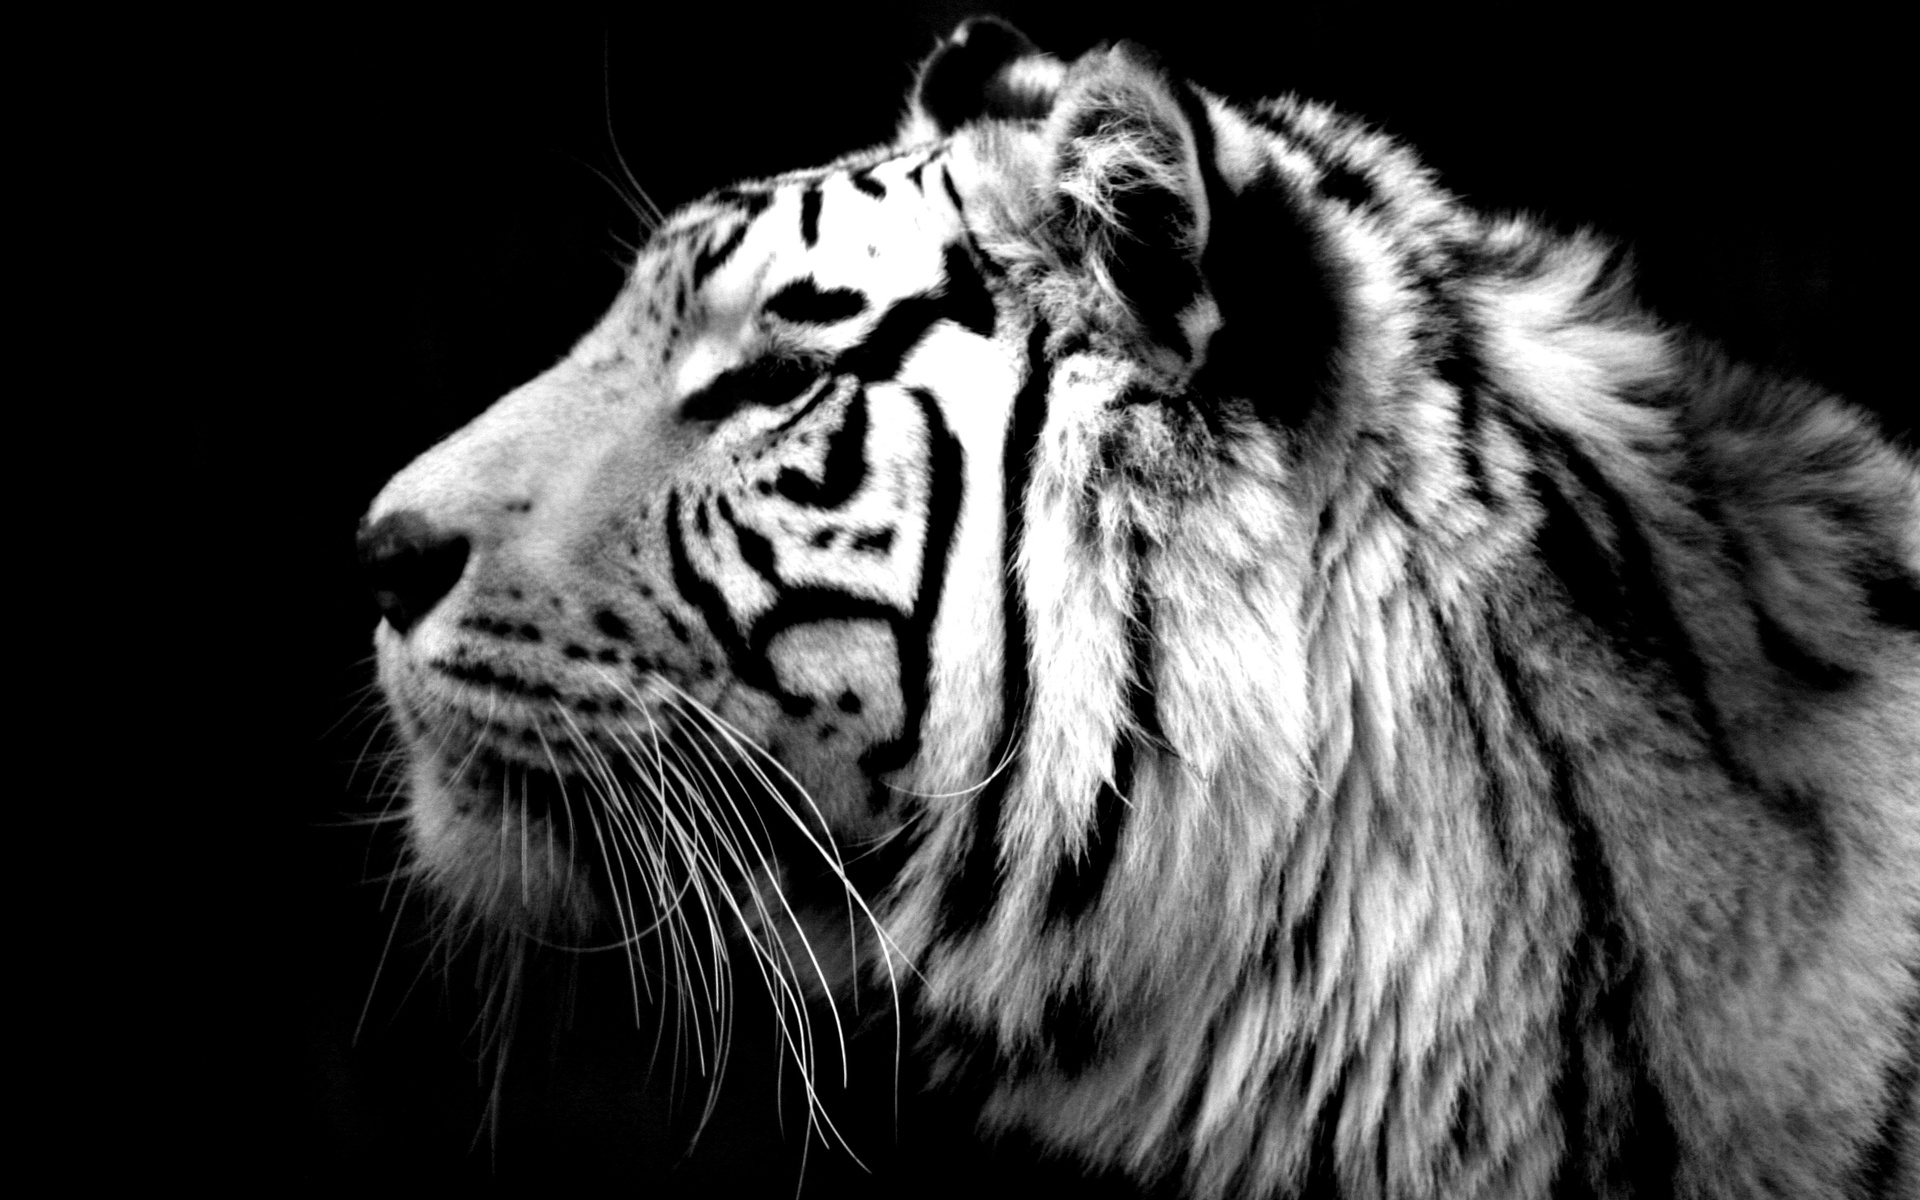 Free download wallpaper Animal, White Tiger on your PC desktop